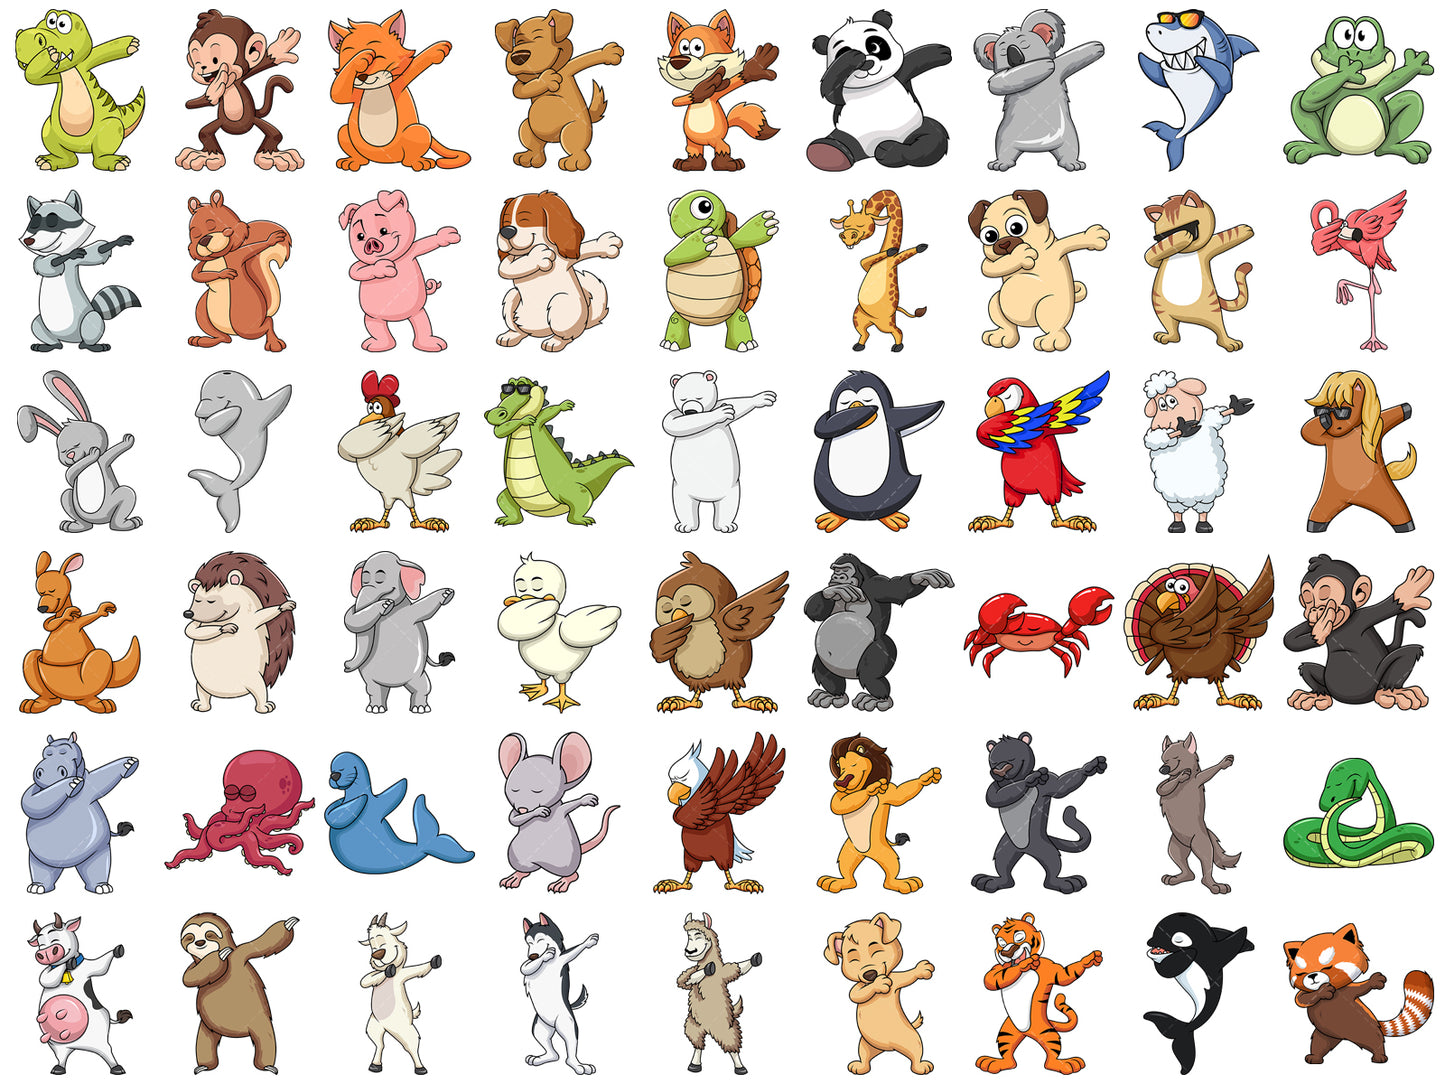 A unique clip art bundle of 54 animals doing the dab dance move.